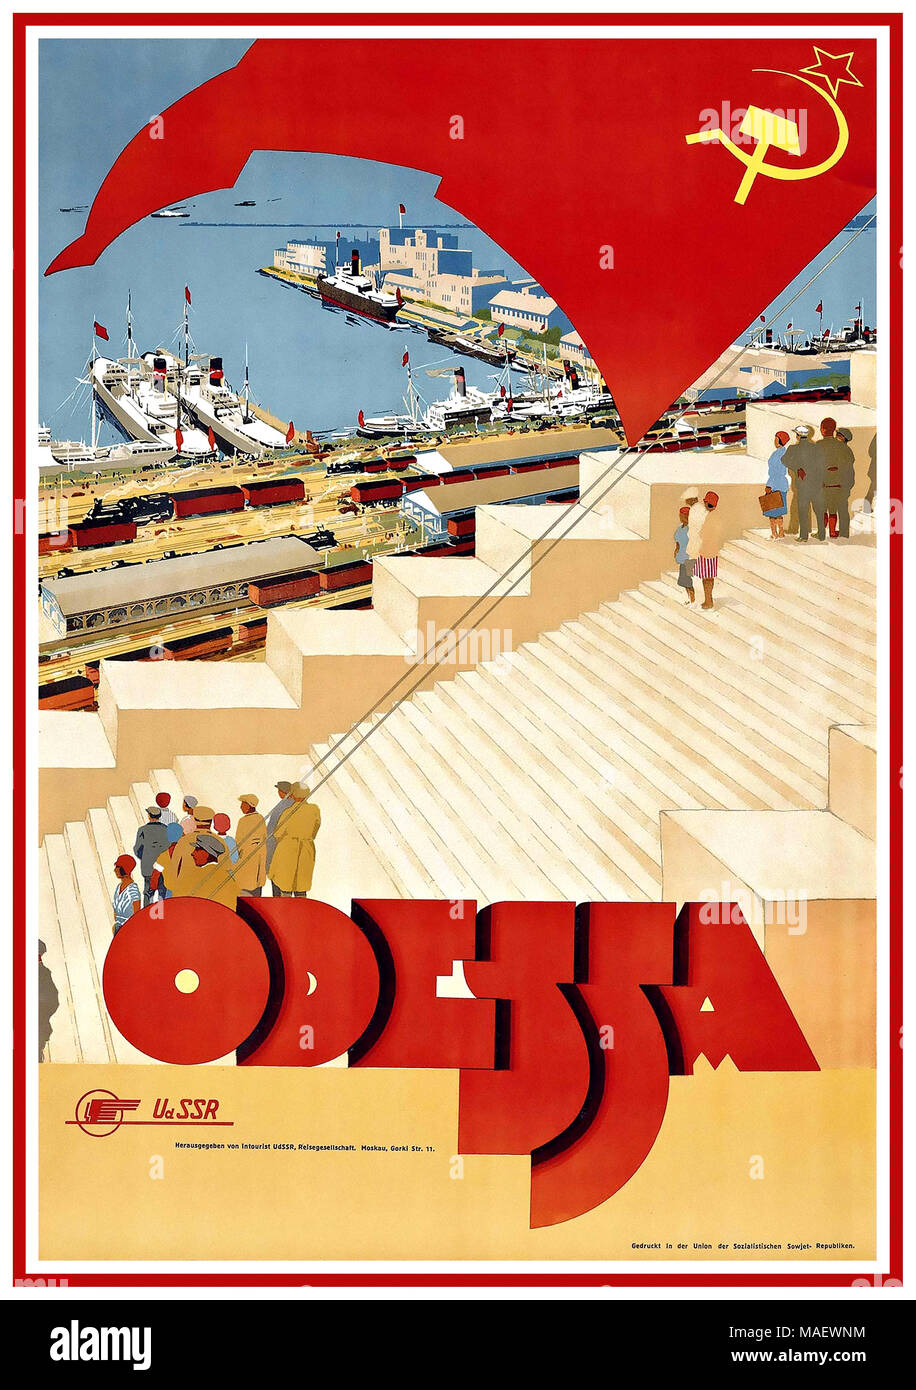 ODESSA 1930er Jahre Vintage UKRAINE Russian RUSSIA Travel Poster Odessa UdSSR Sowjetunion ein frühsowjetisches Intourist-Poster, das eine realistische Landschaft des Hafens von Odessa und der Bahnhöfe mit stilisierter Typografie kombiniert. Die Odessa-Stufen, die nach der berühmten Szene in Sergei Eisentsteins Film Battleship Potemkin Weltruhm erlangten, wurden zwischen 1837 und 1841 errichtet. Die Stufen verbinden den berühmten Hafen mit der Stadt selbst und sind die bemerkenswertesten Wahrzeichen Odessas. Stockfoto